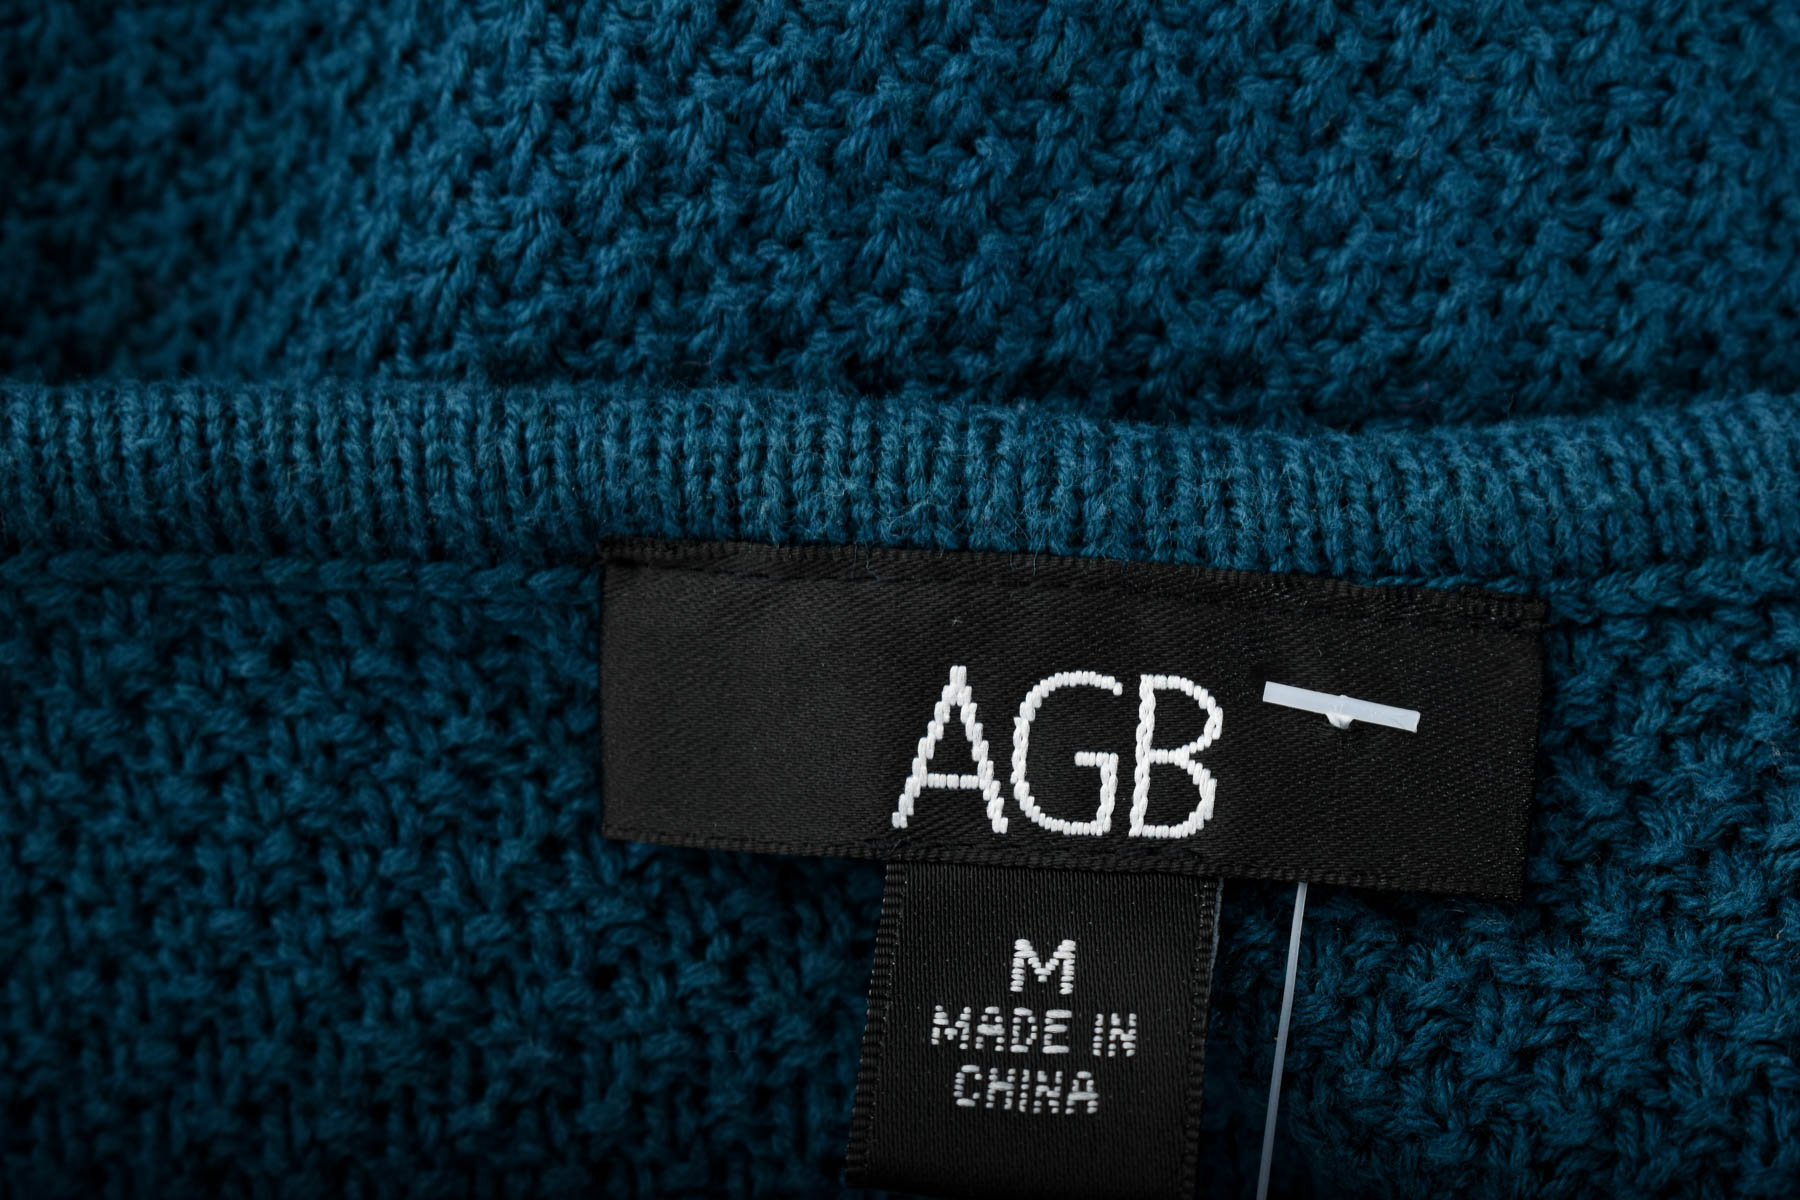 Women's sweater - AGB - 2